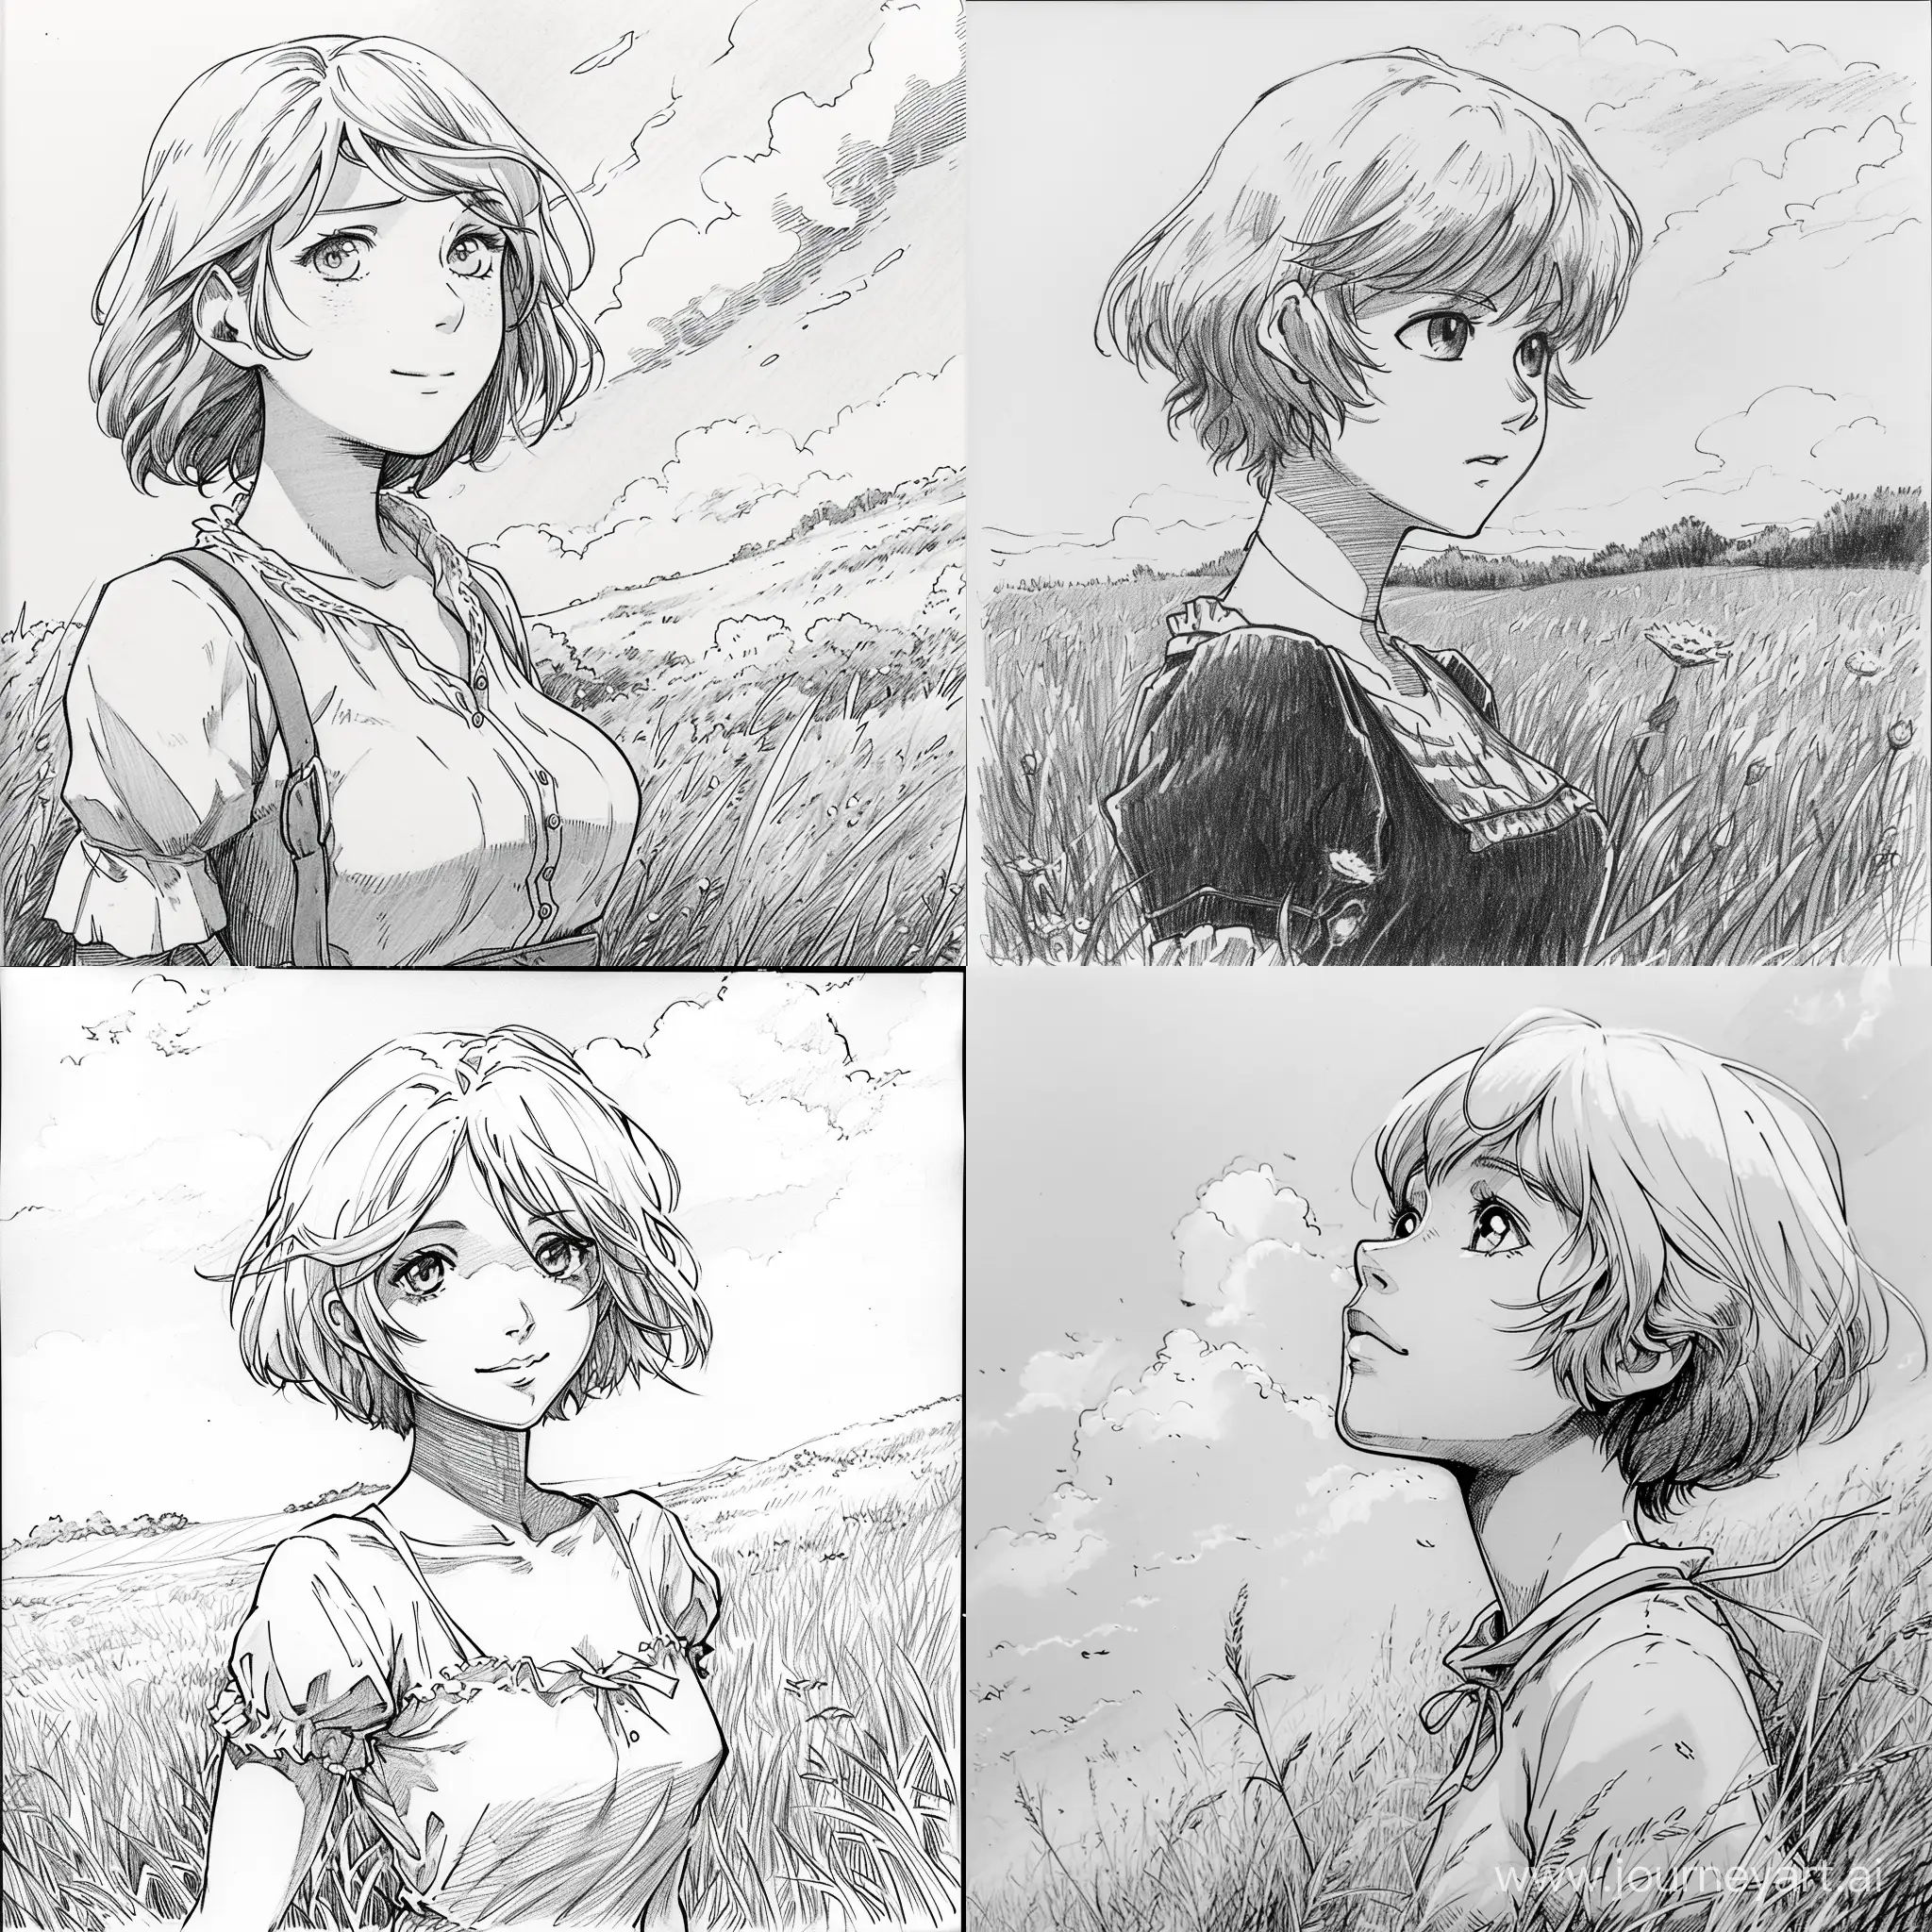 В чёрно-белом цвете, нарисовано карандашом, в стиле старого аниме, женщина, пастушка, молодая, с короткими светлыми волосами, на лугу